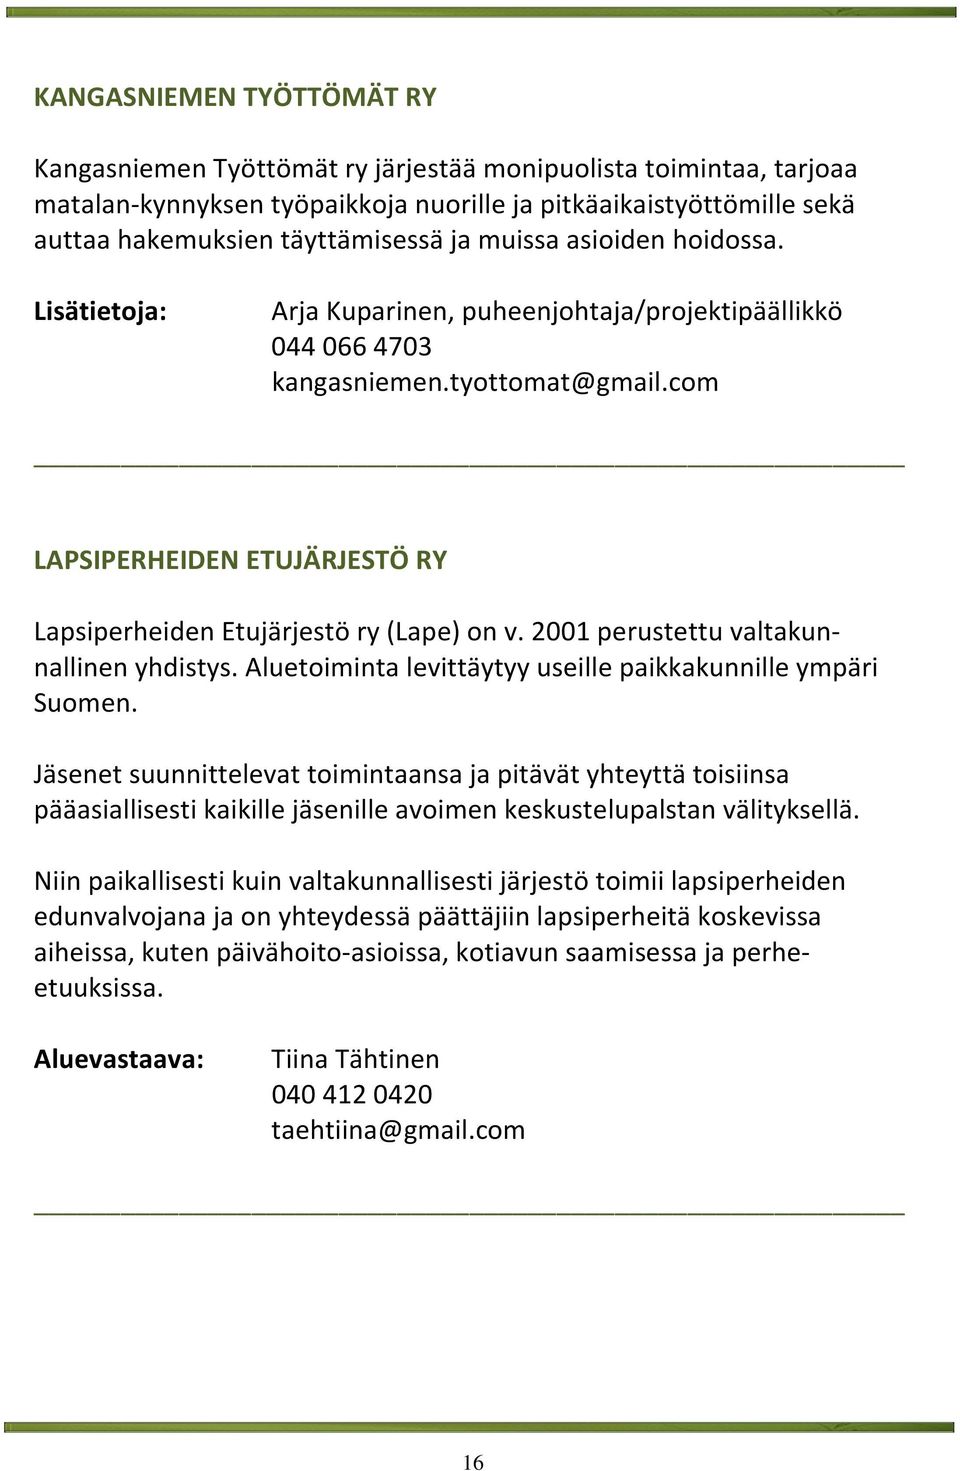 2001 perustettu valtakunnallinen yhdistys. Aluetoiminta levittäytyy useille paikkakunnille ympäri Suomen.